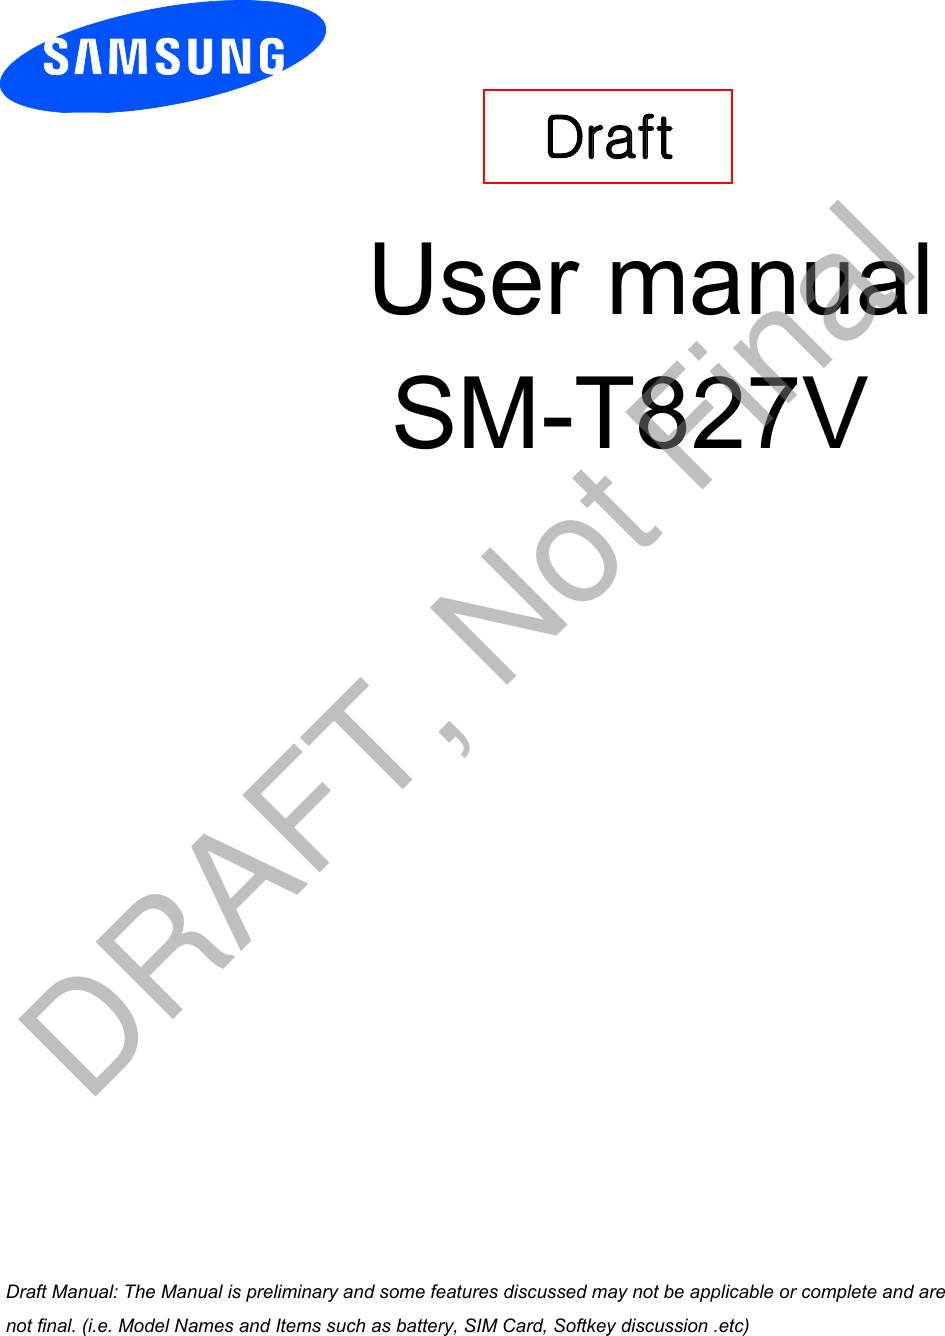 User manual SM-T827VDraft a ana  ana  na and  a dd a n  aa   and a n na  d a and   a a  ad  dn DRAFT, Not Final